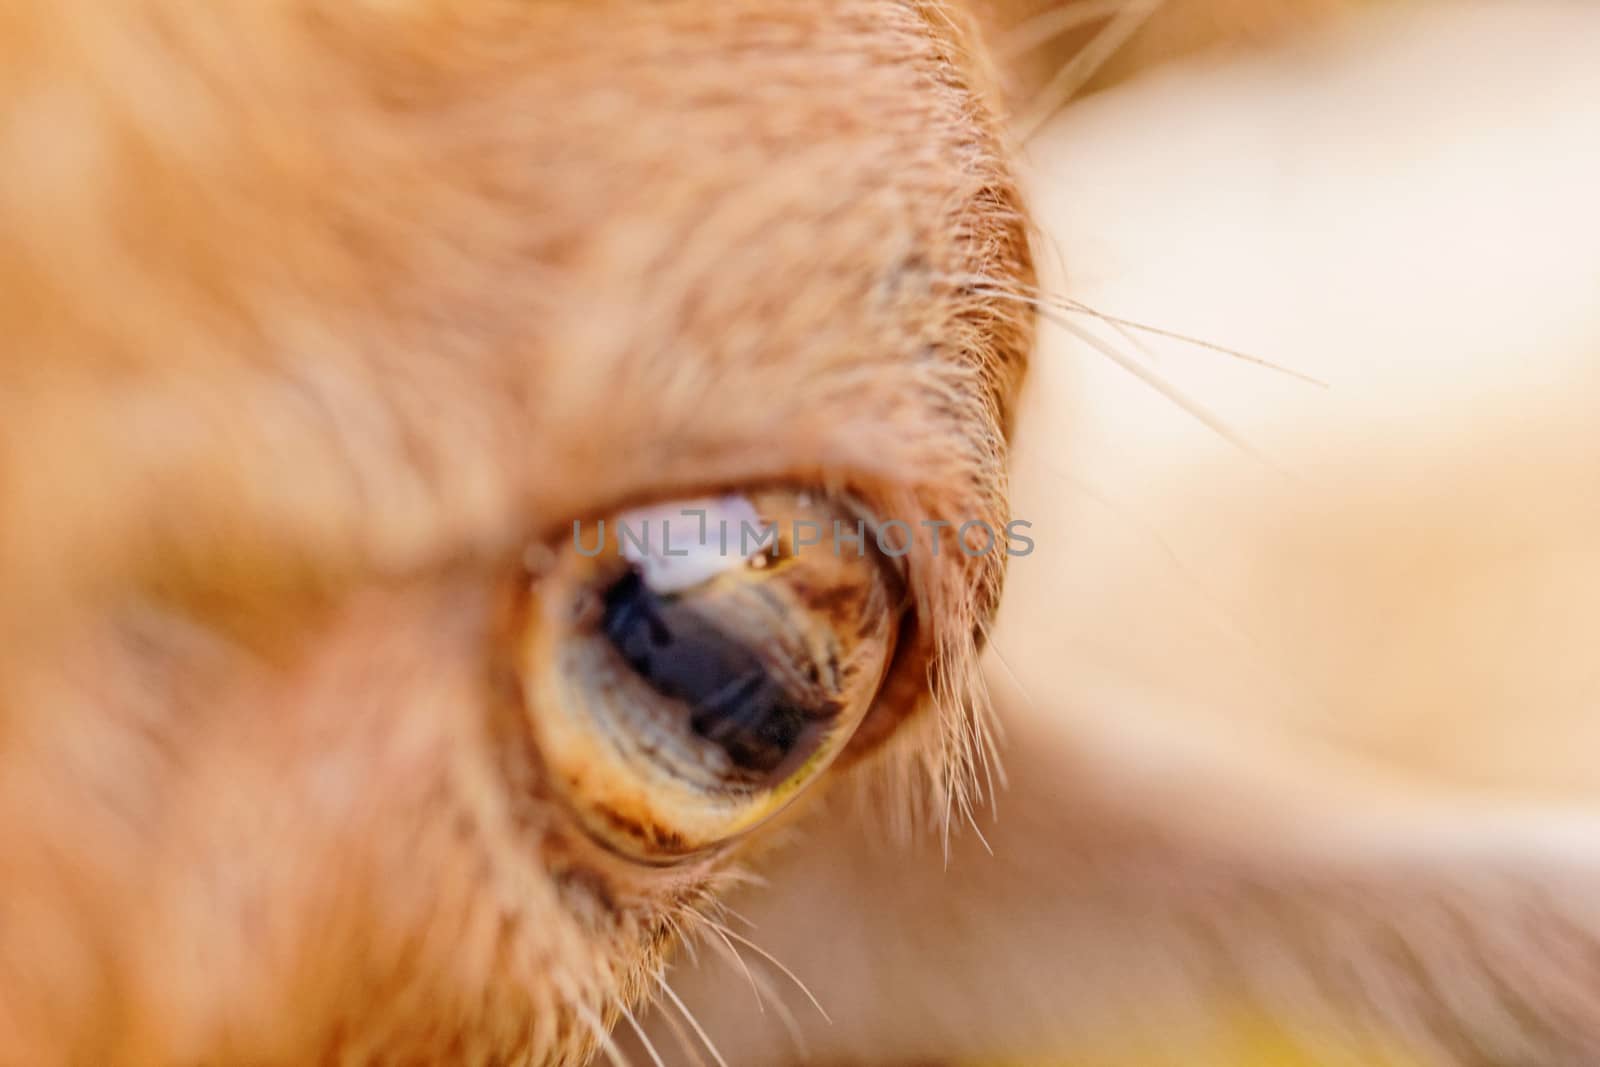 goat's eye by NagyDodo